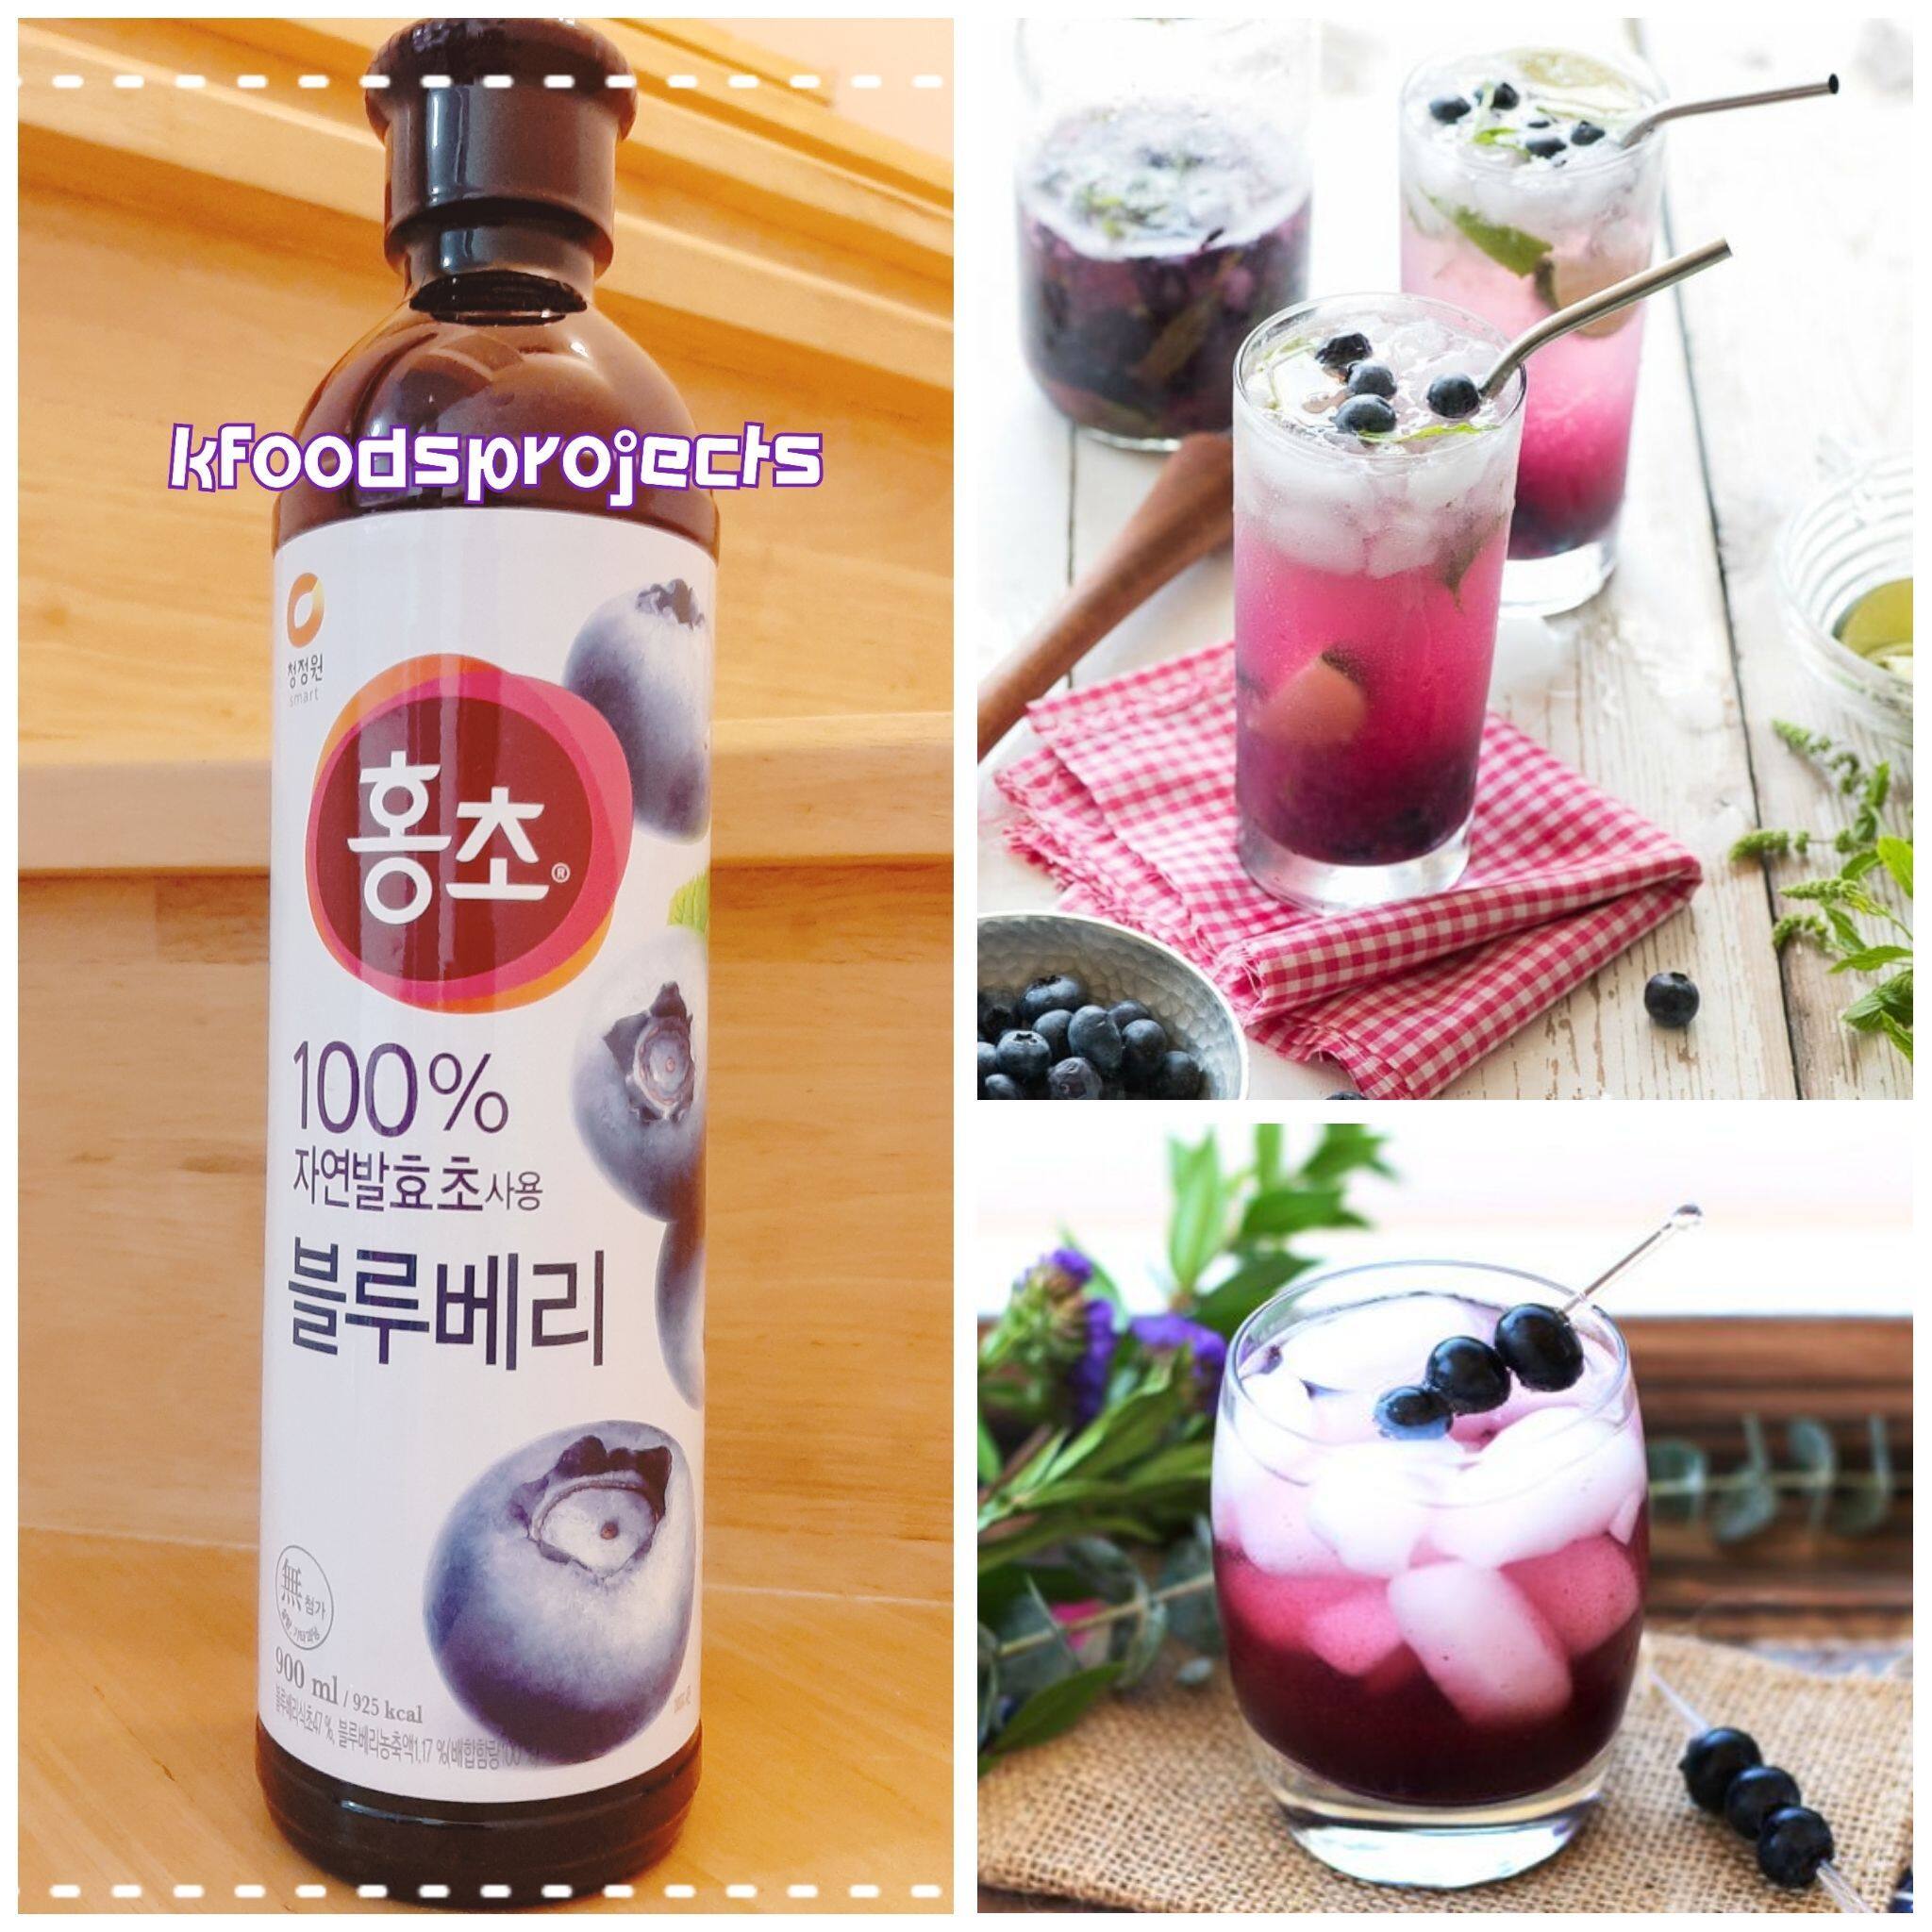 น้ำฮงโช รสบลูเบอรี่ (นำ้หมักออร์แกนิคจากธรรมชาติ) Hongcho Drink 900ML (Vital Plus) ยอดขายอันดับ 1 ของเกาหลี